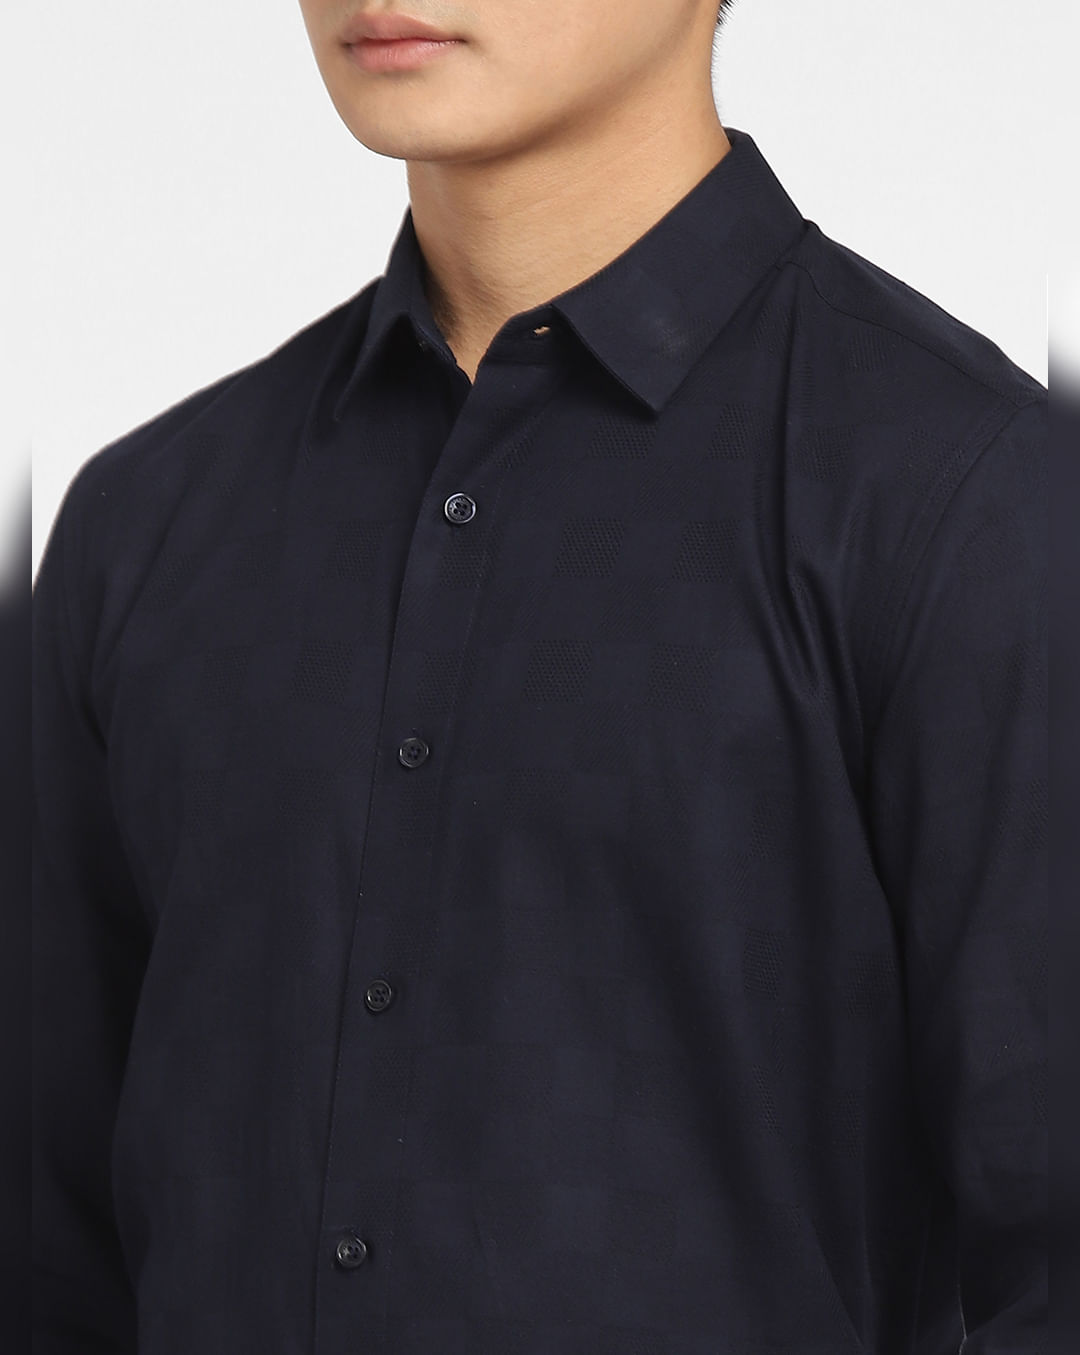 Buy Navy Blue Printed Full Sleeves Shirt for Men